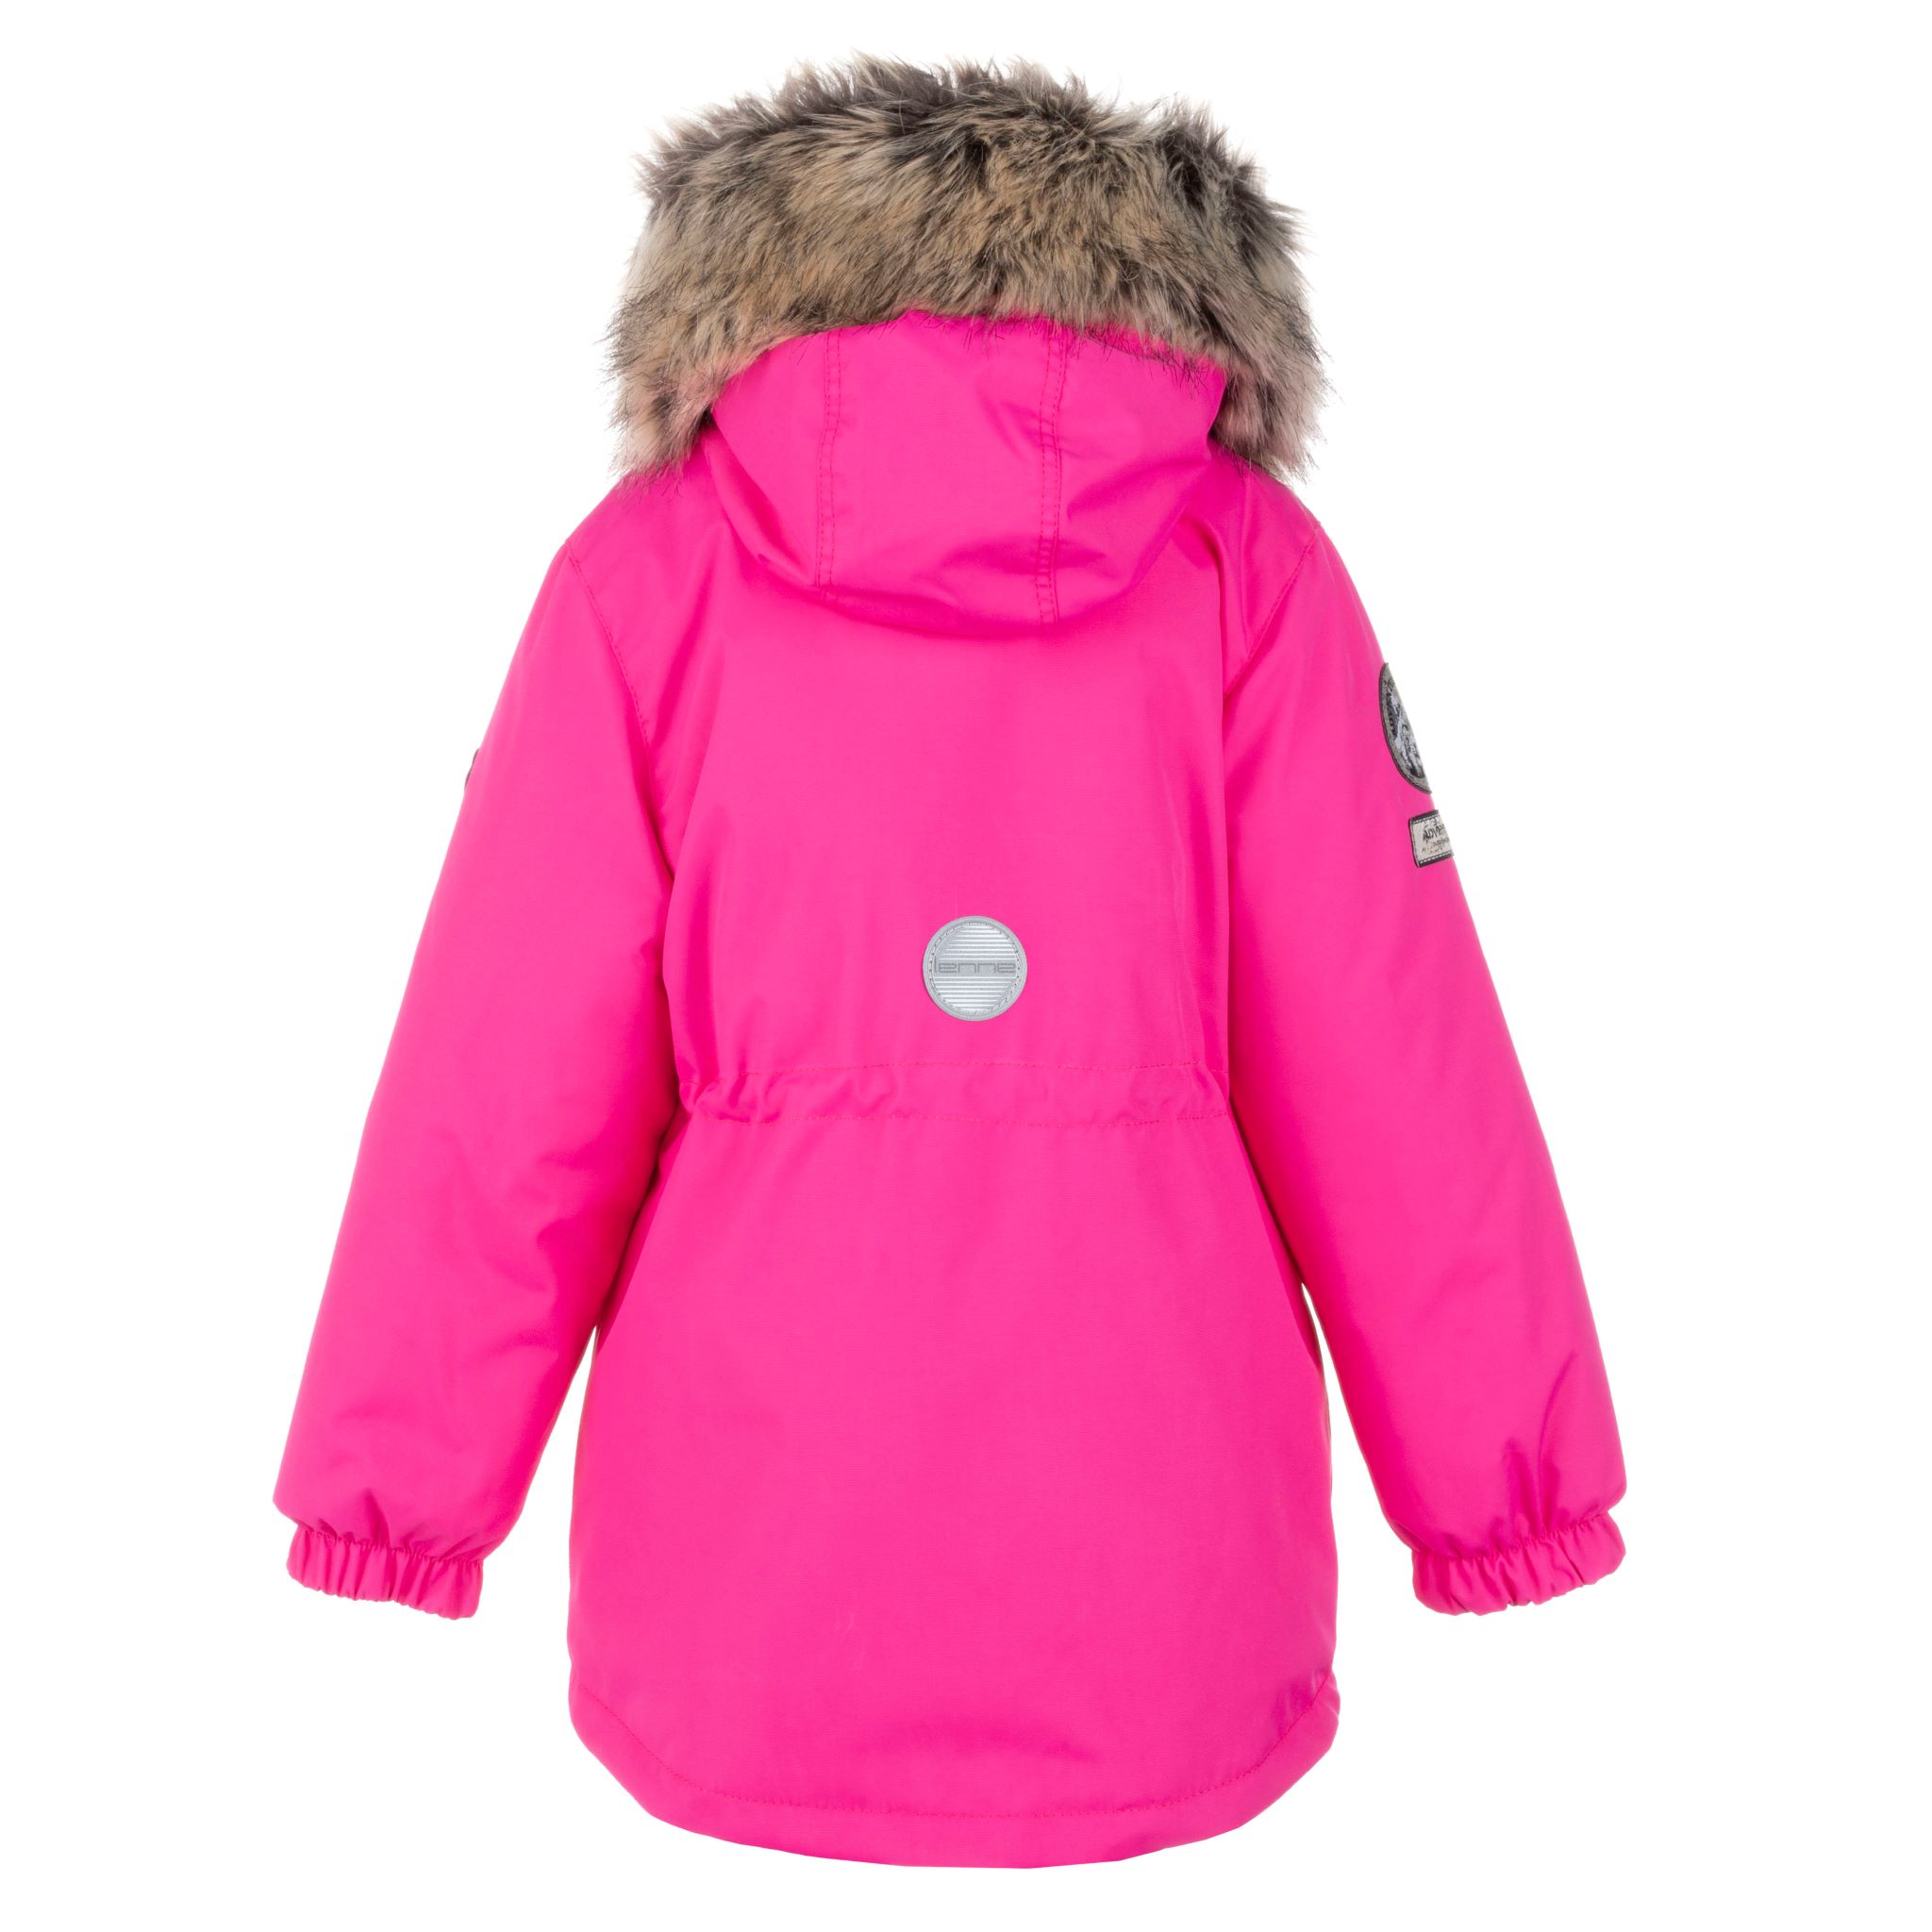 Lenne Maya удлиненная куртка парка для девочки 21330-267 розовая 